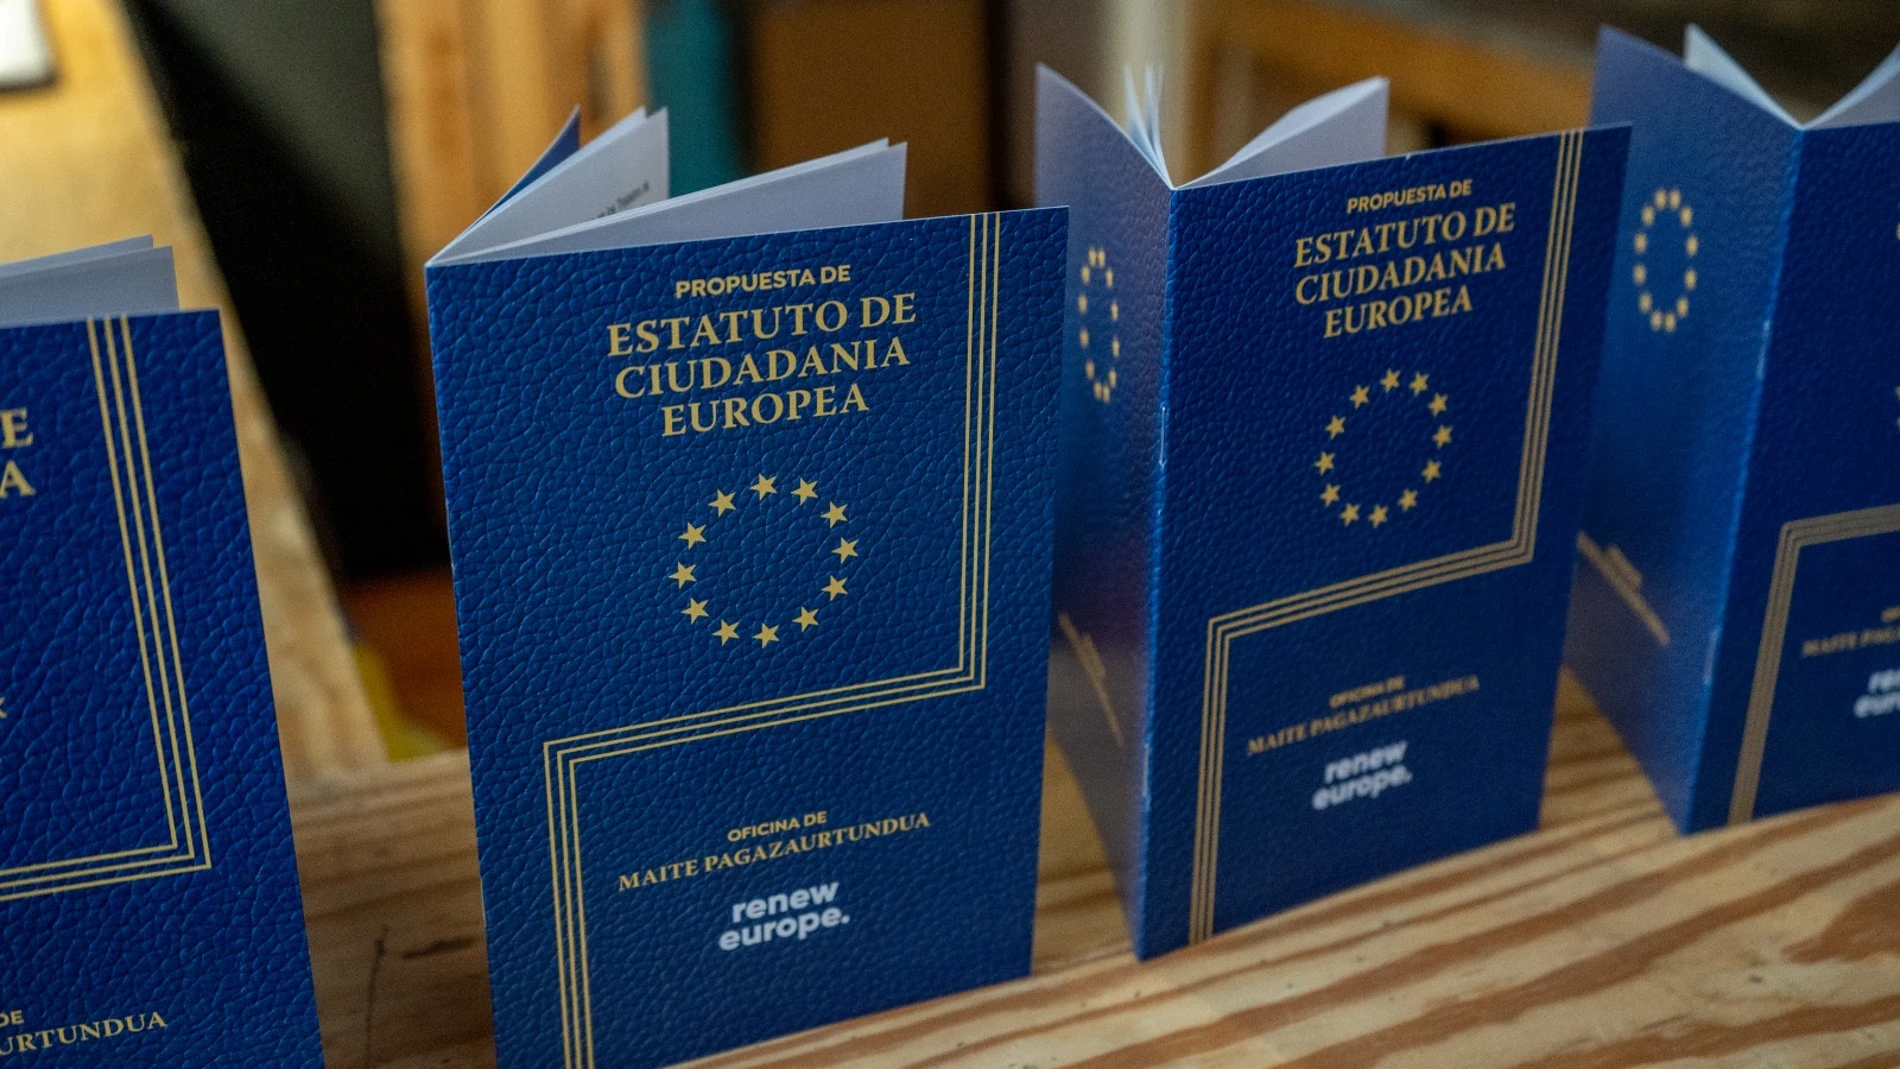 La propuesta de Estatuto de la Ciudadanía que ha presentado Maite Pagaza